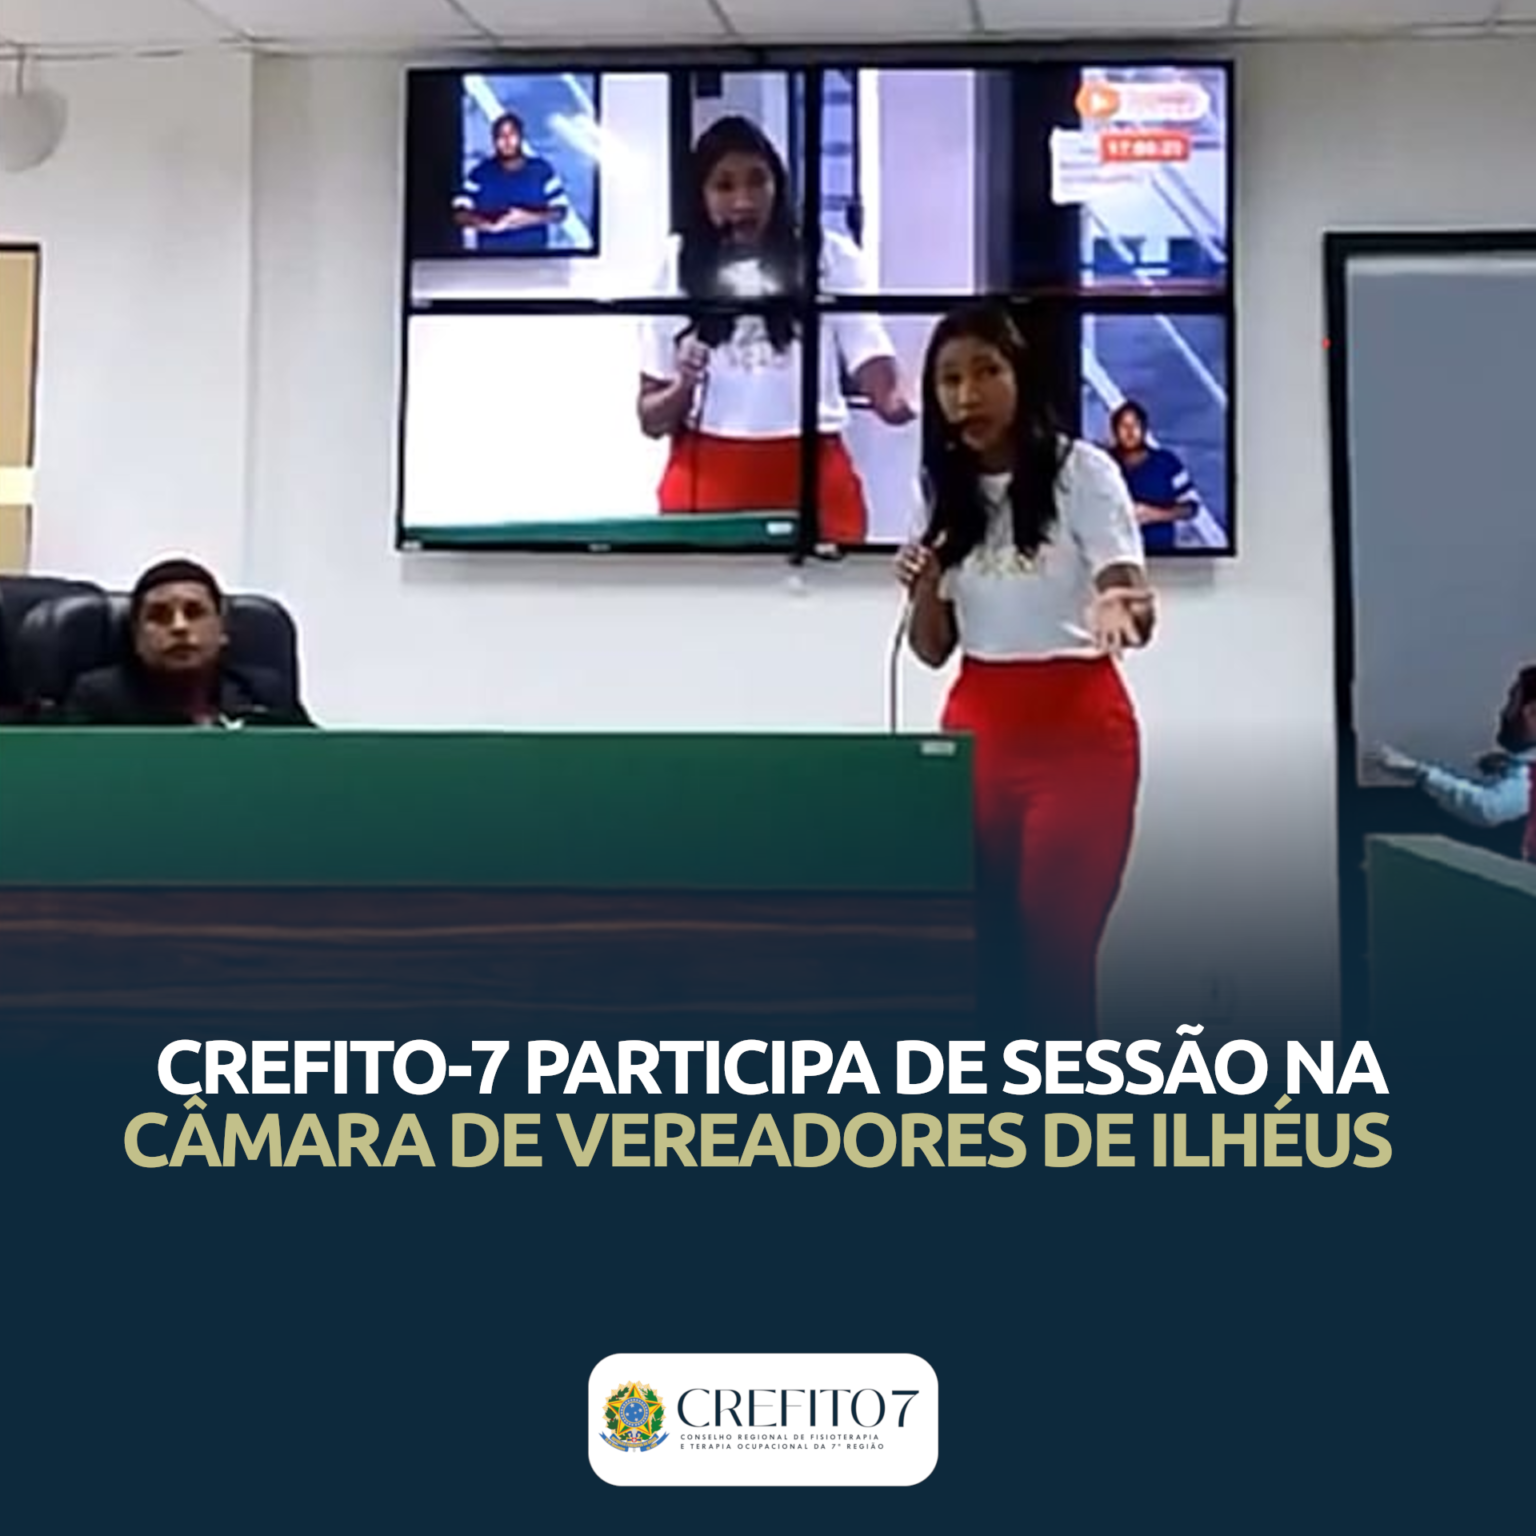 CREFITO-7 PARTICIPA DE SESSÃO NA CÂMARA DE VEREADORES DE ILHÉUS